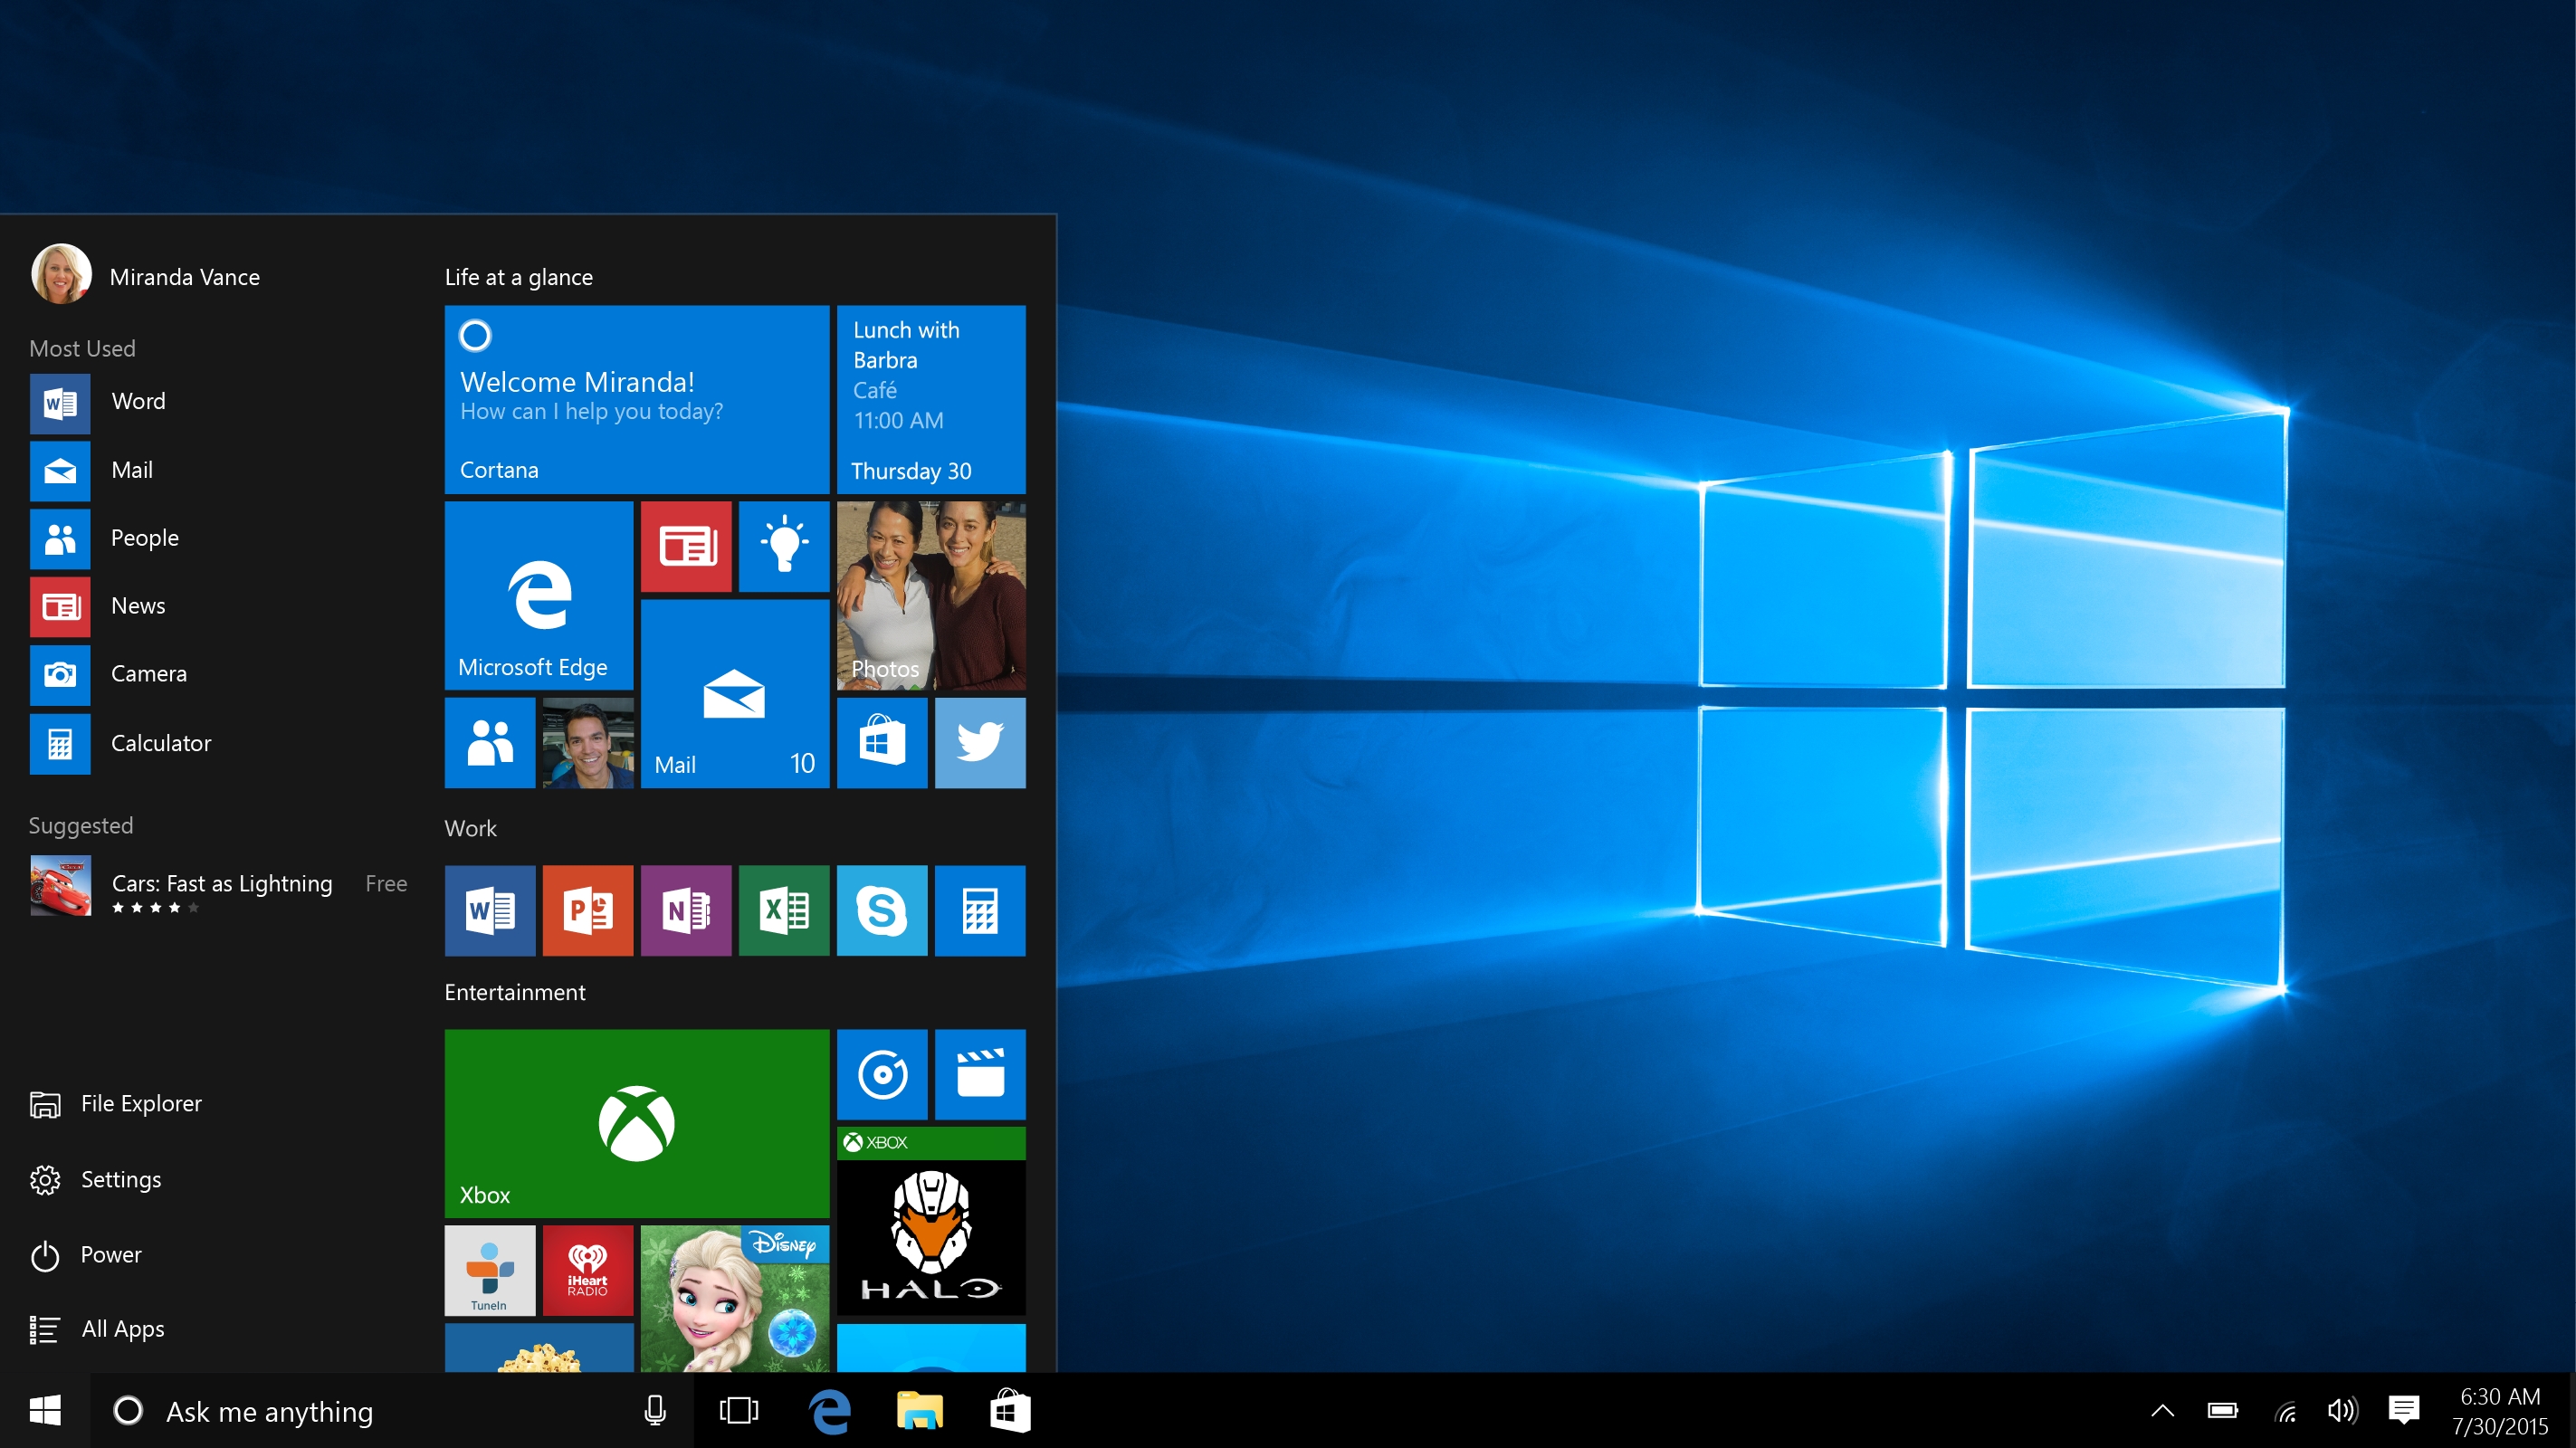 EFF mener Microsoft er uærlige og ufine hva angår installasjon og bruk av Windows 10.